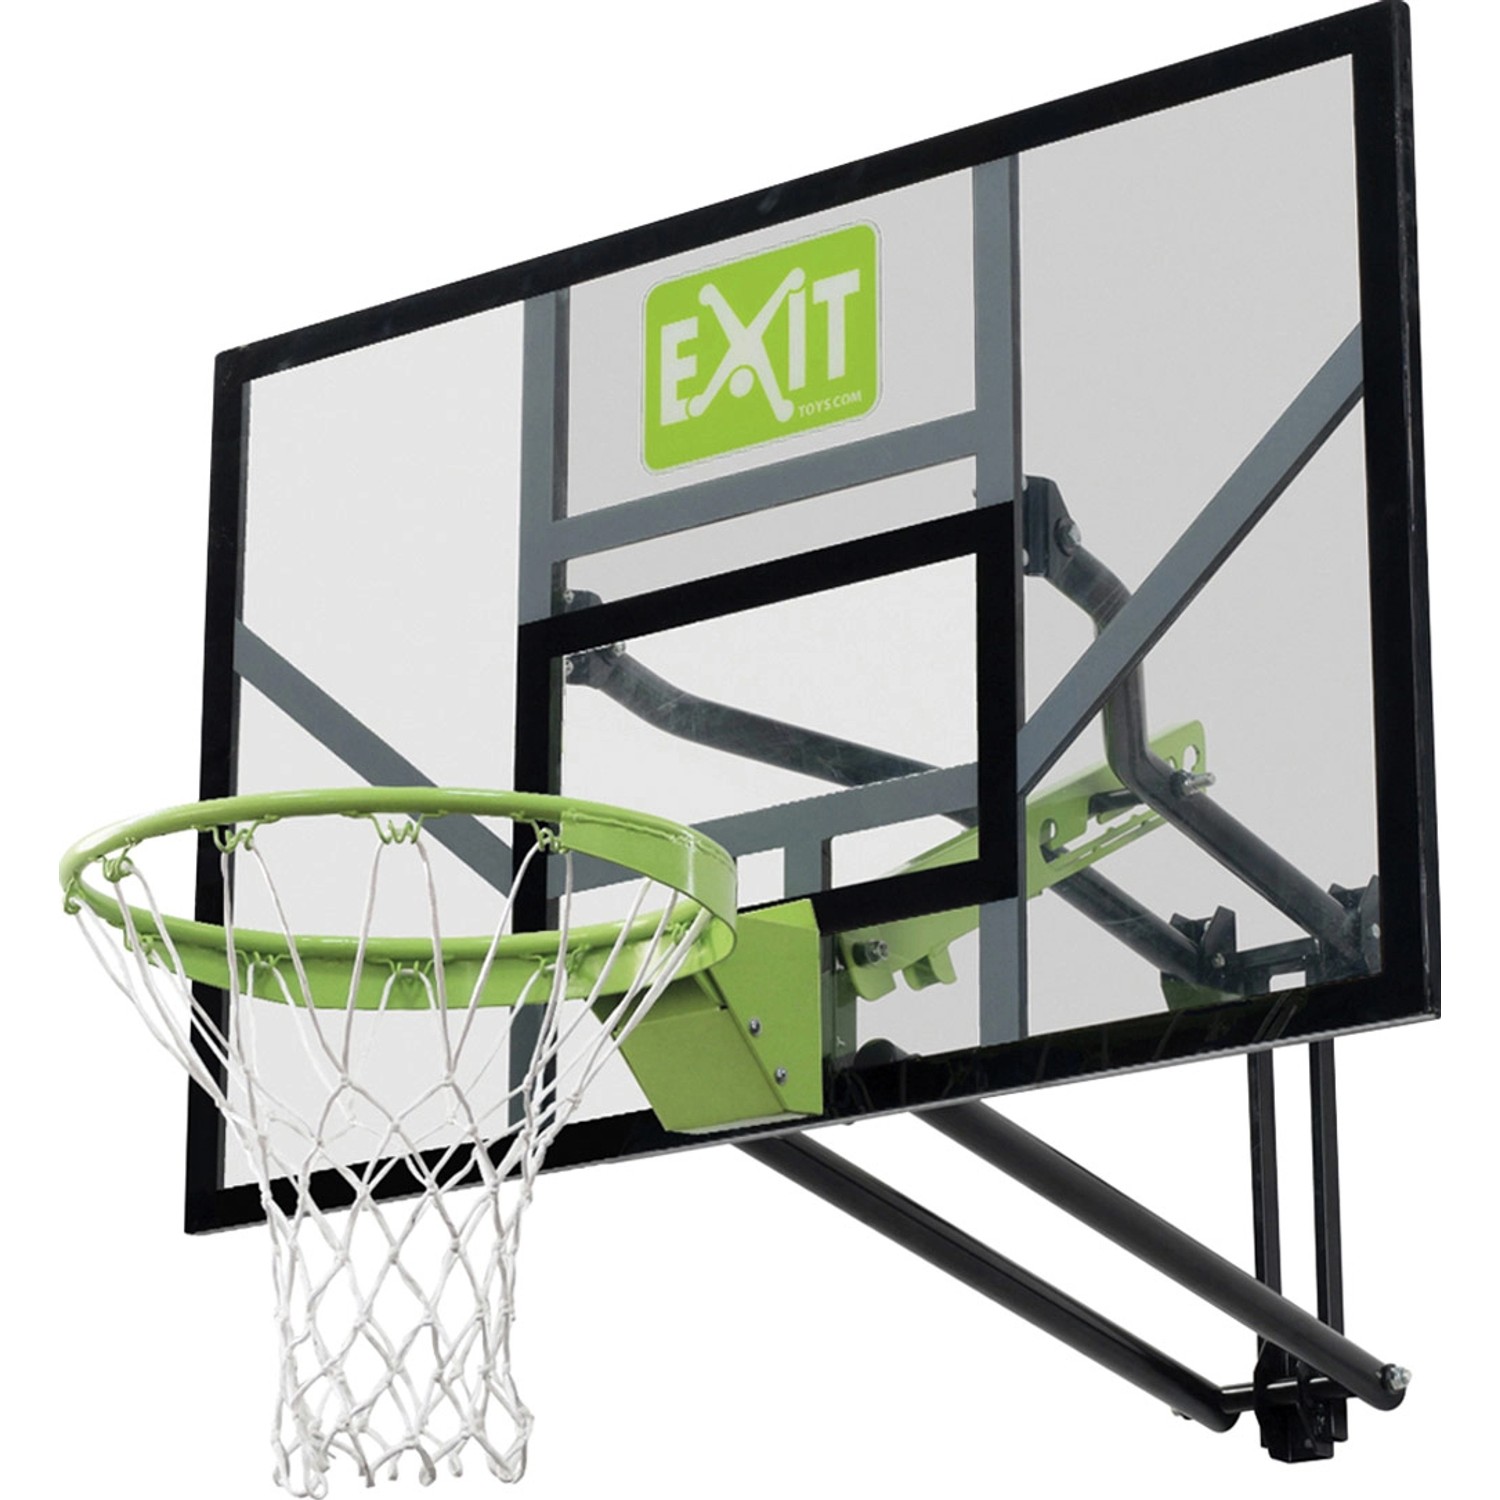 EXIT Galaxy Basketballkorb zur Wandmontage mit Dunkring - grün/schwarz von Exit Toys